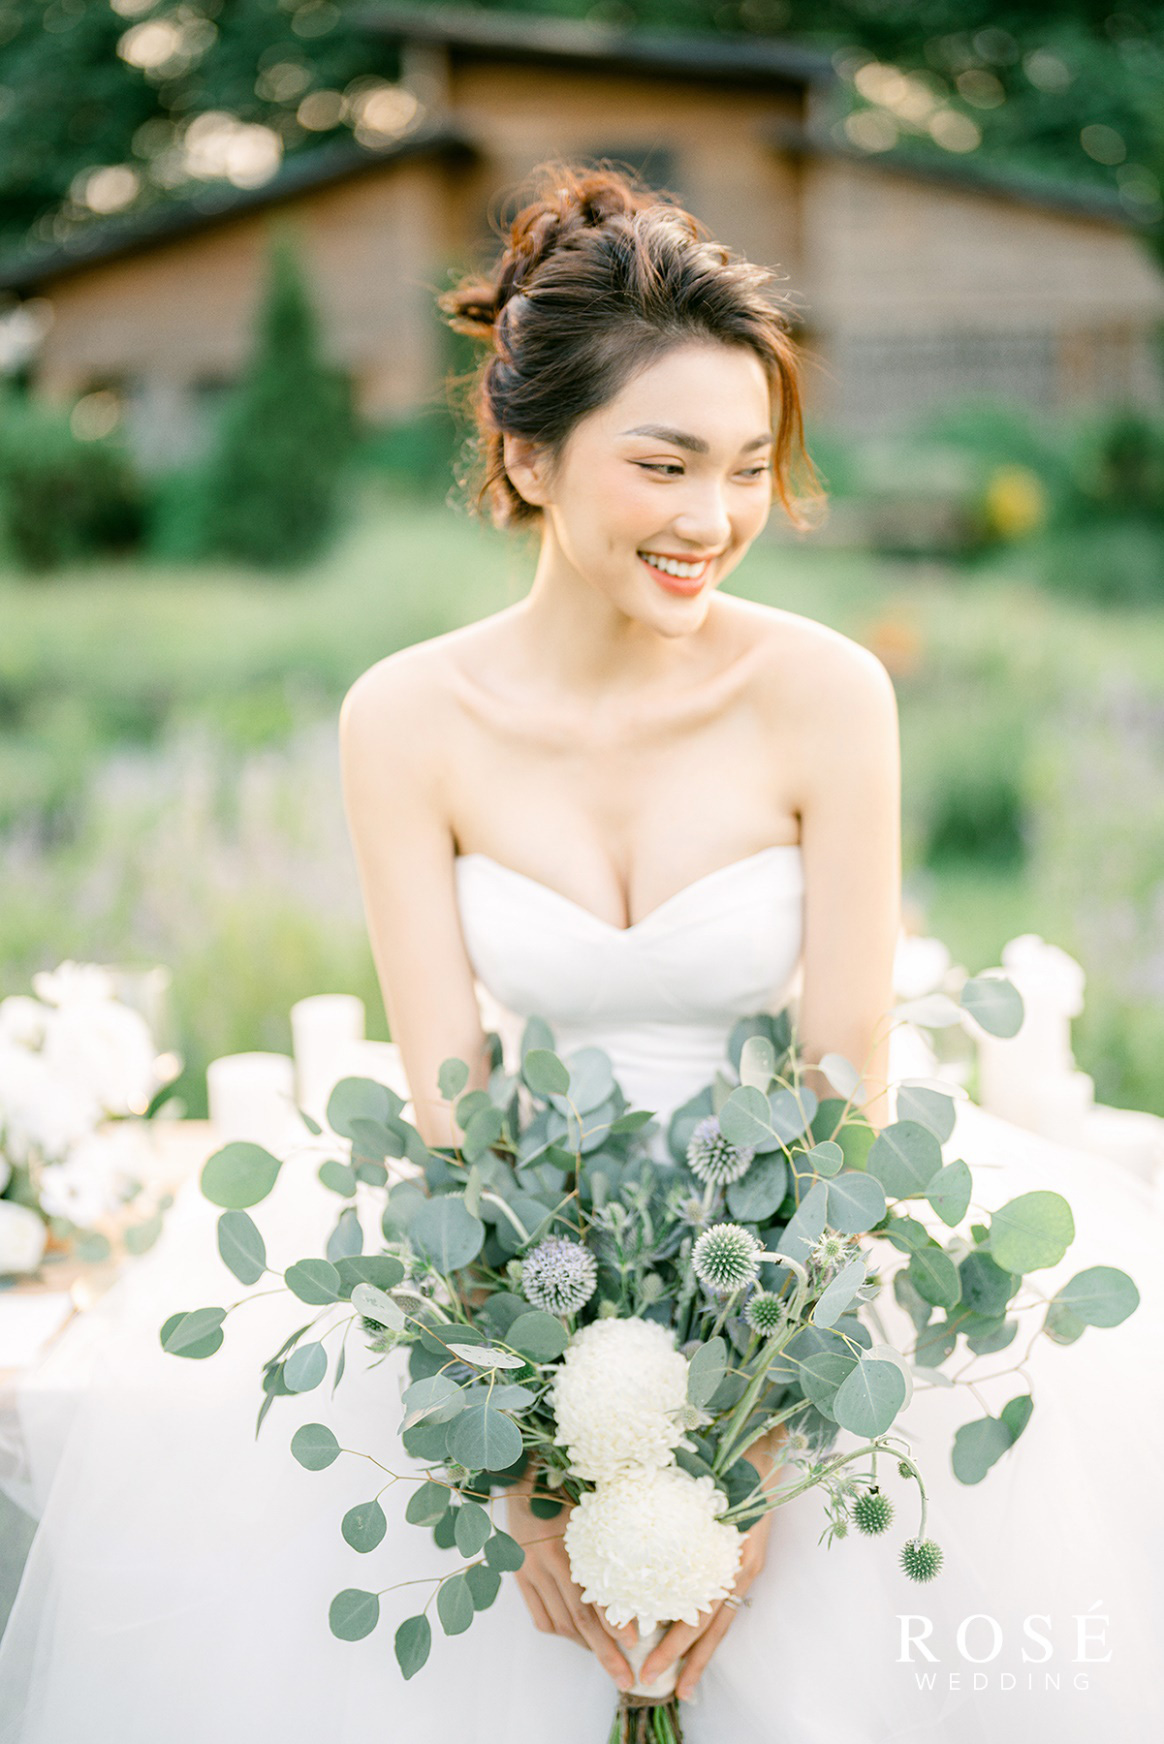 Hé lộ ảnh cưới đẹp lung linh của “Gương mặt đẹp nhất Hoa hậu Hoàn vũ Việt Nam” - Ảnh 4.